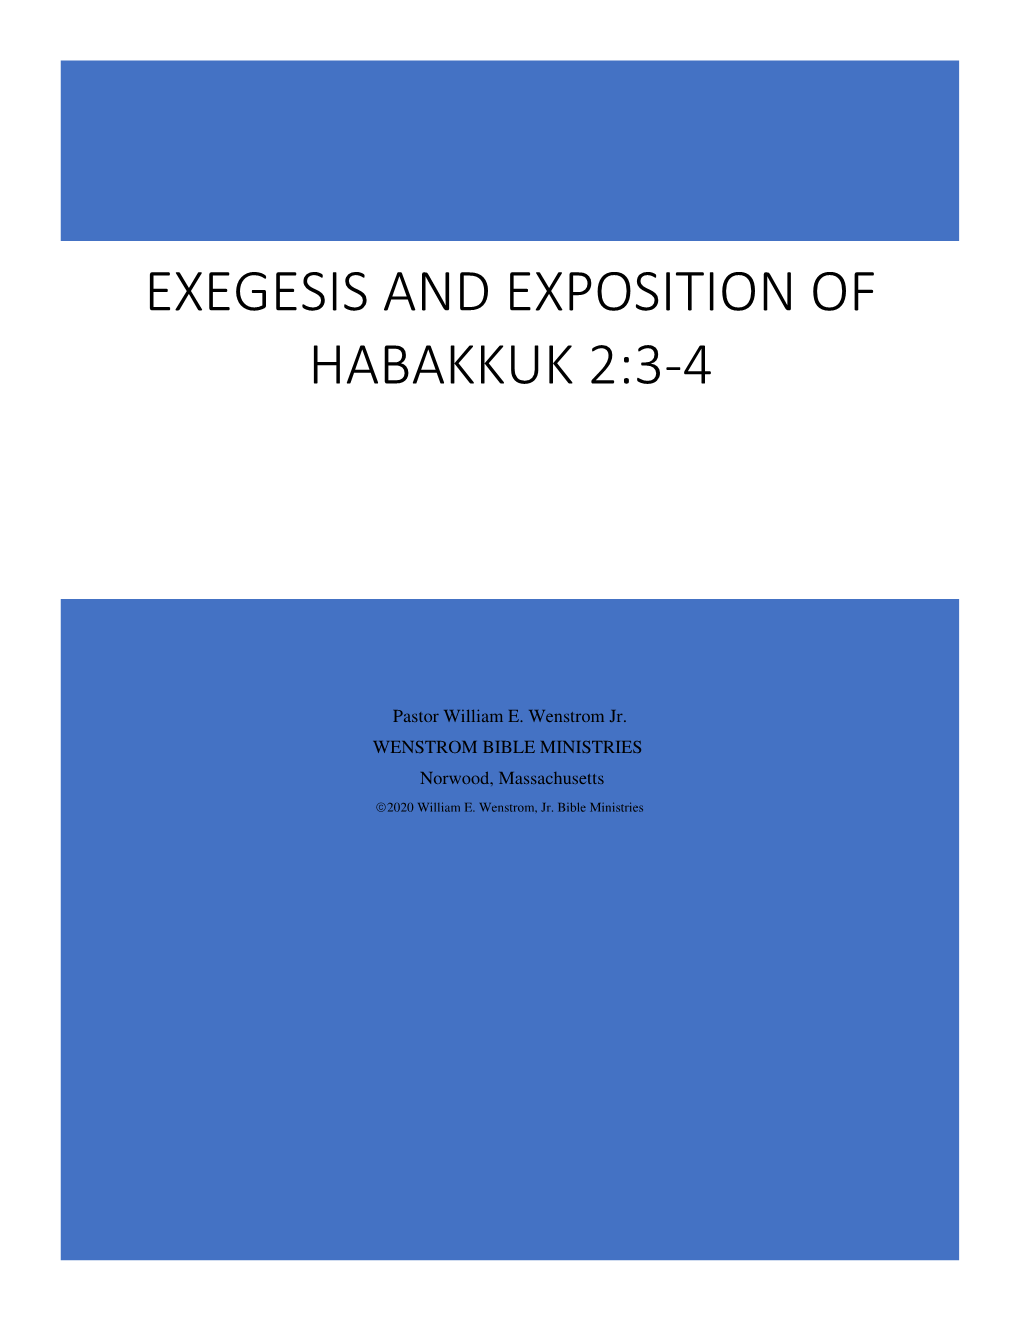 Exegesis and Exposition of Habakkuk 2:3-4